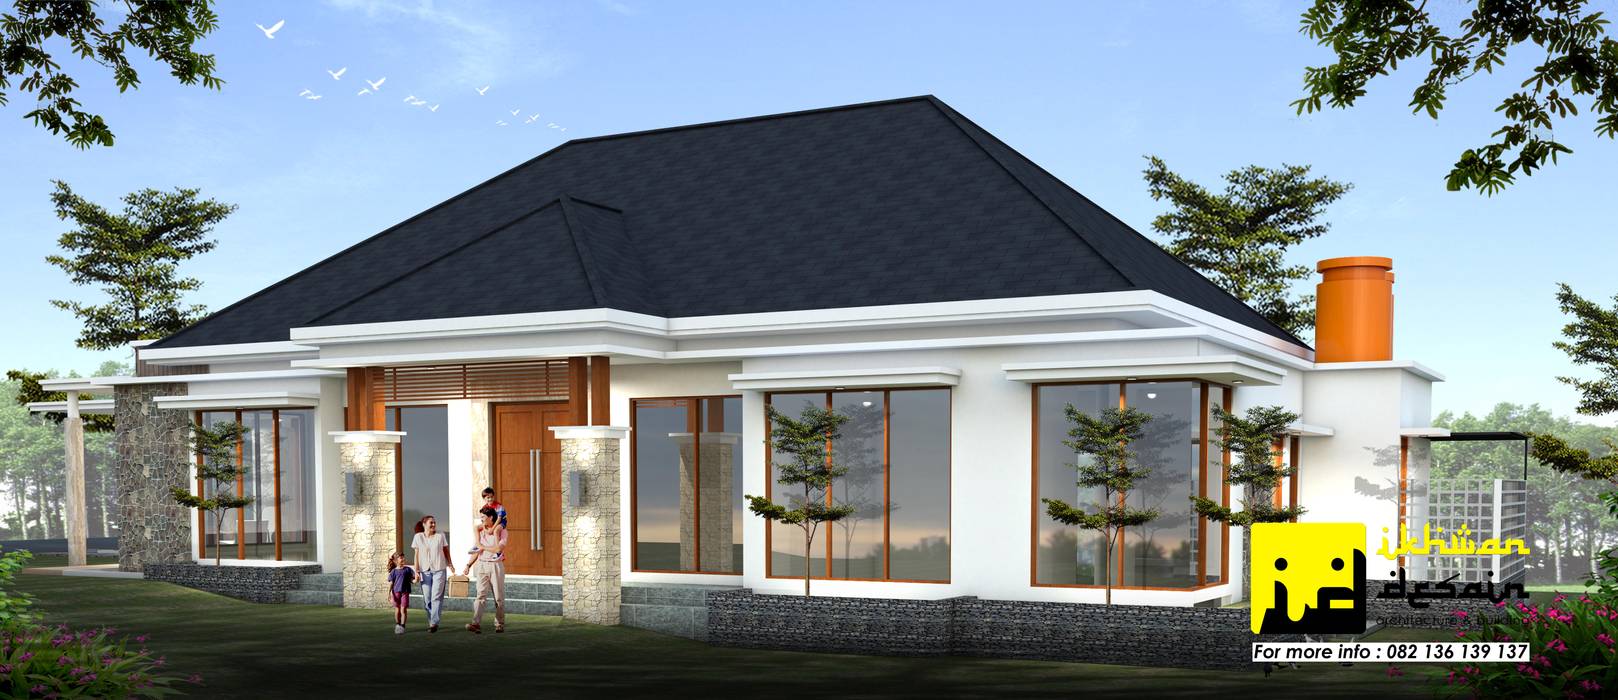 Rumah Modern Tropis Ikhwan desain Rumah tinggal Batu Bata